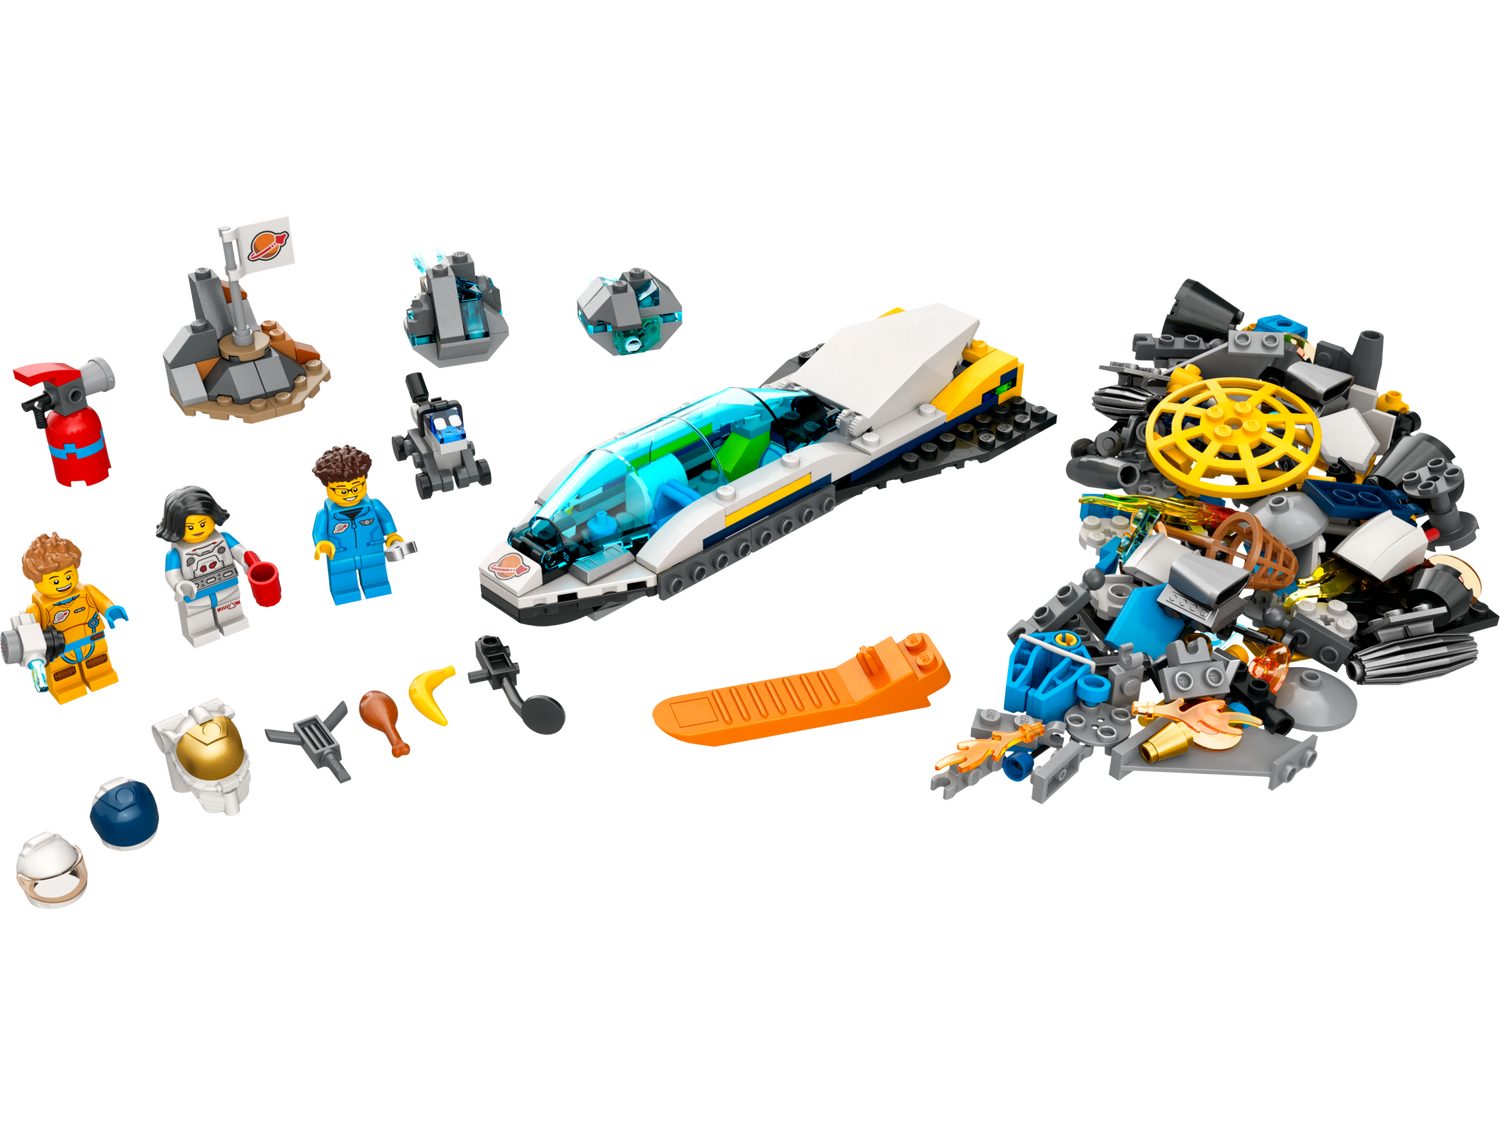 Lego *****Lego 60354 City - Les missions d’exploration spatiale sur Mars